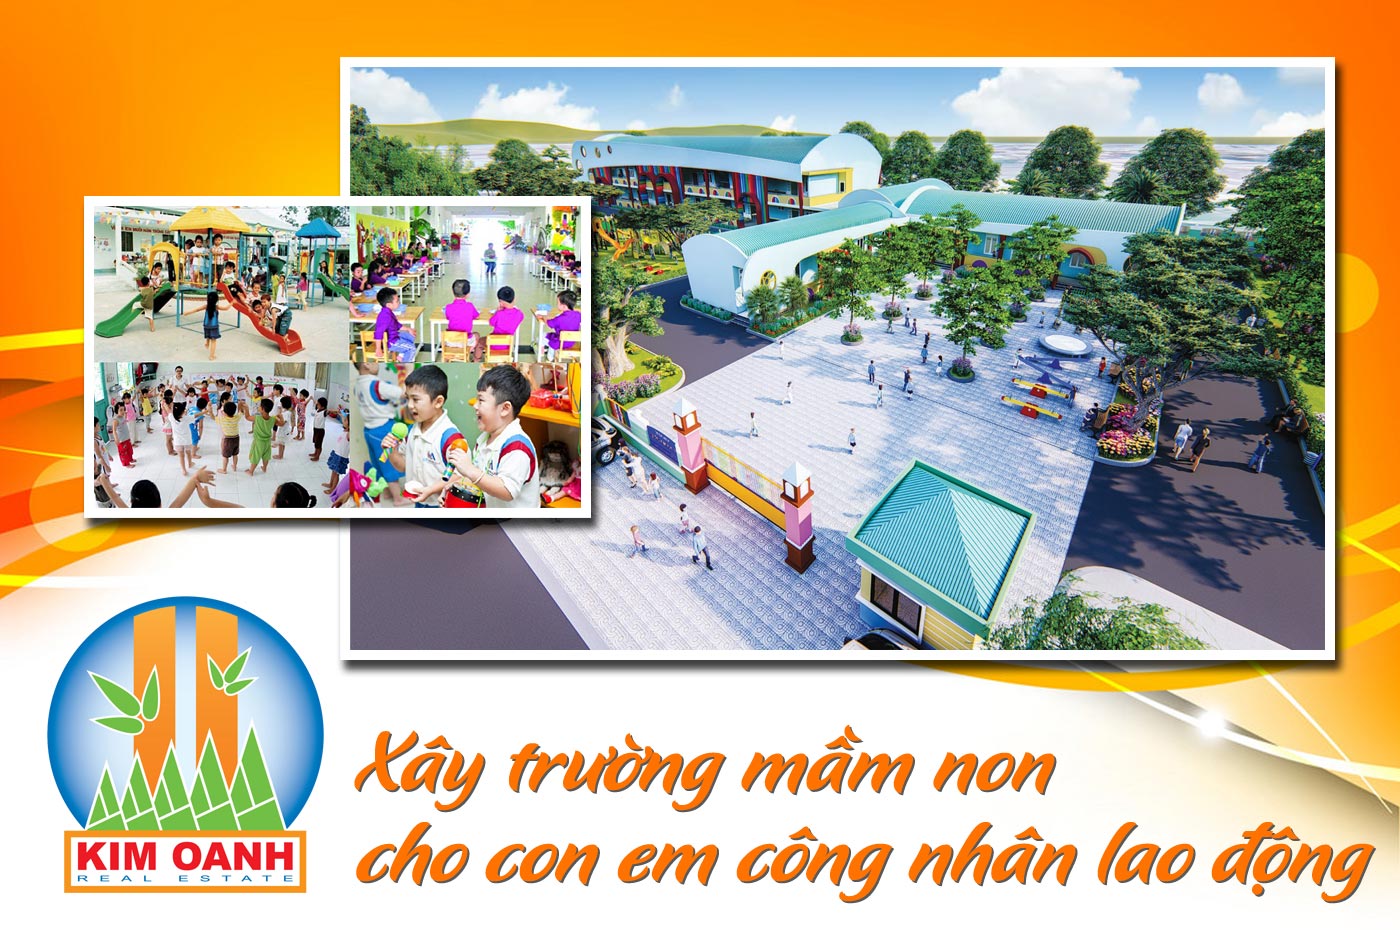 Kim Oanh Group xây trường mầm non cho con em công nhân LĐ - Ảnh 1